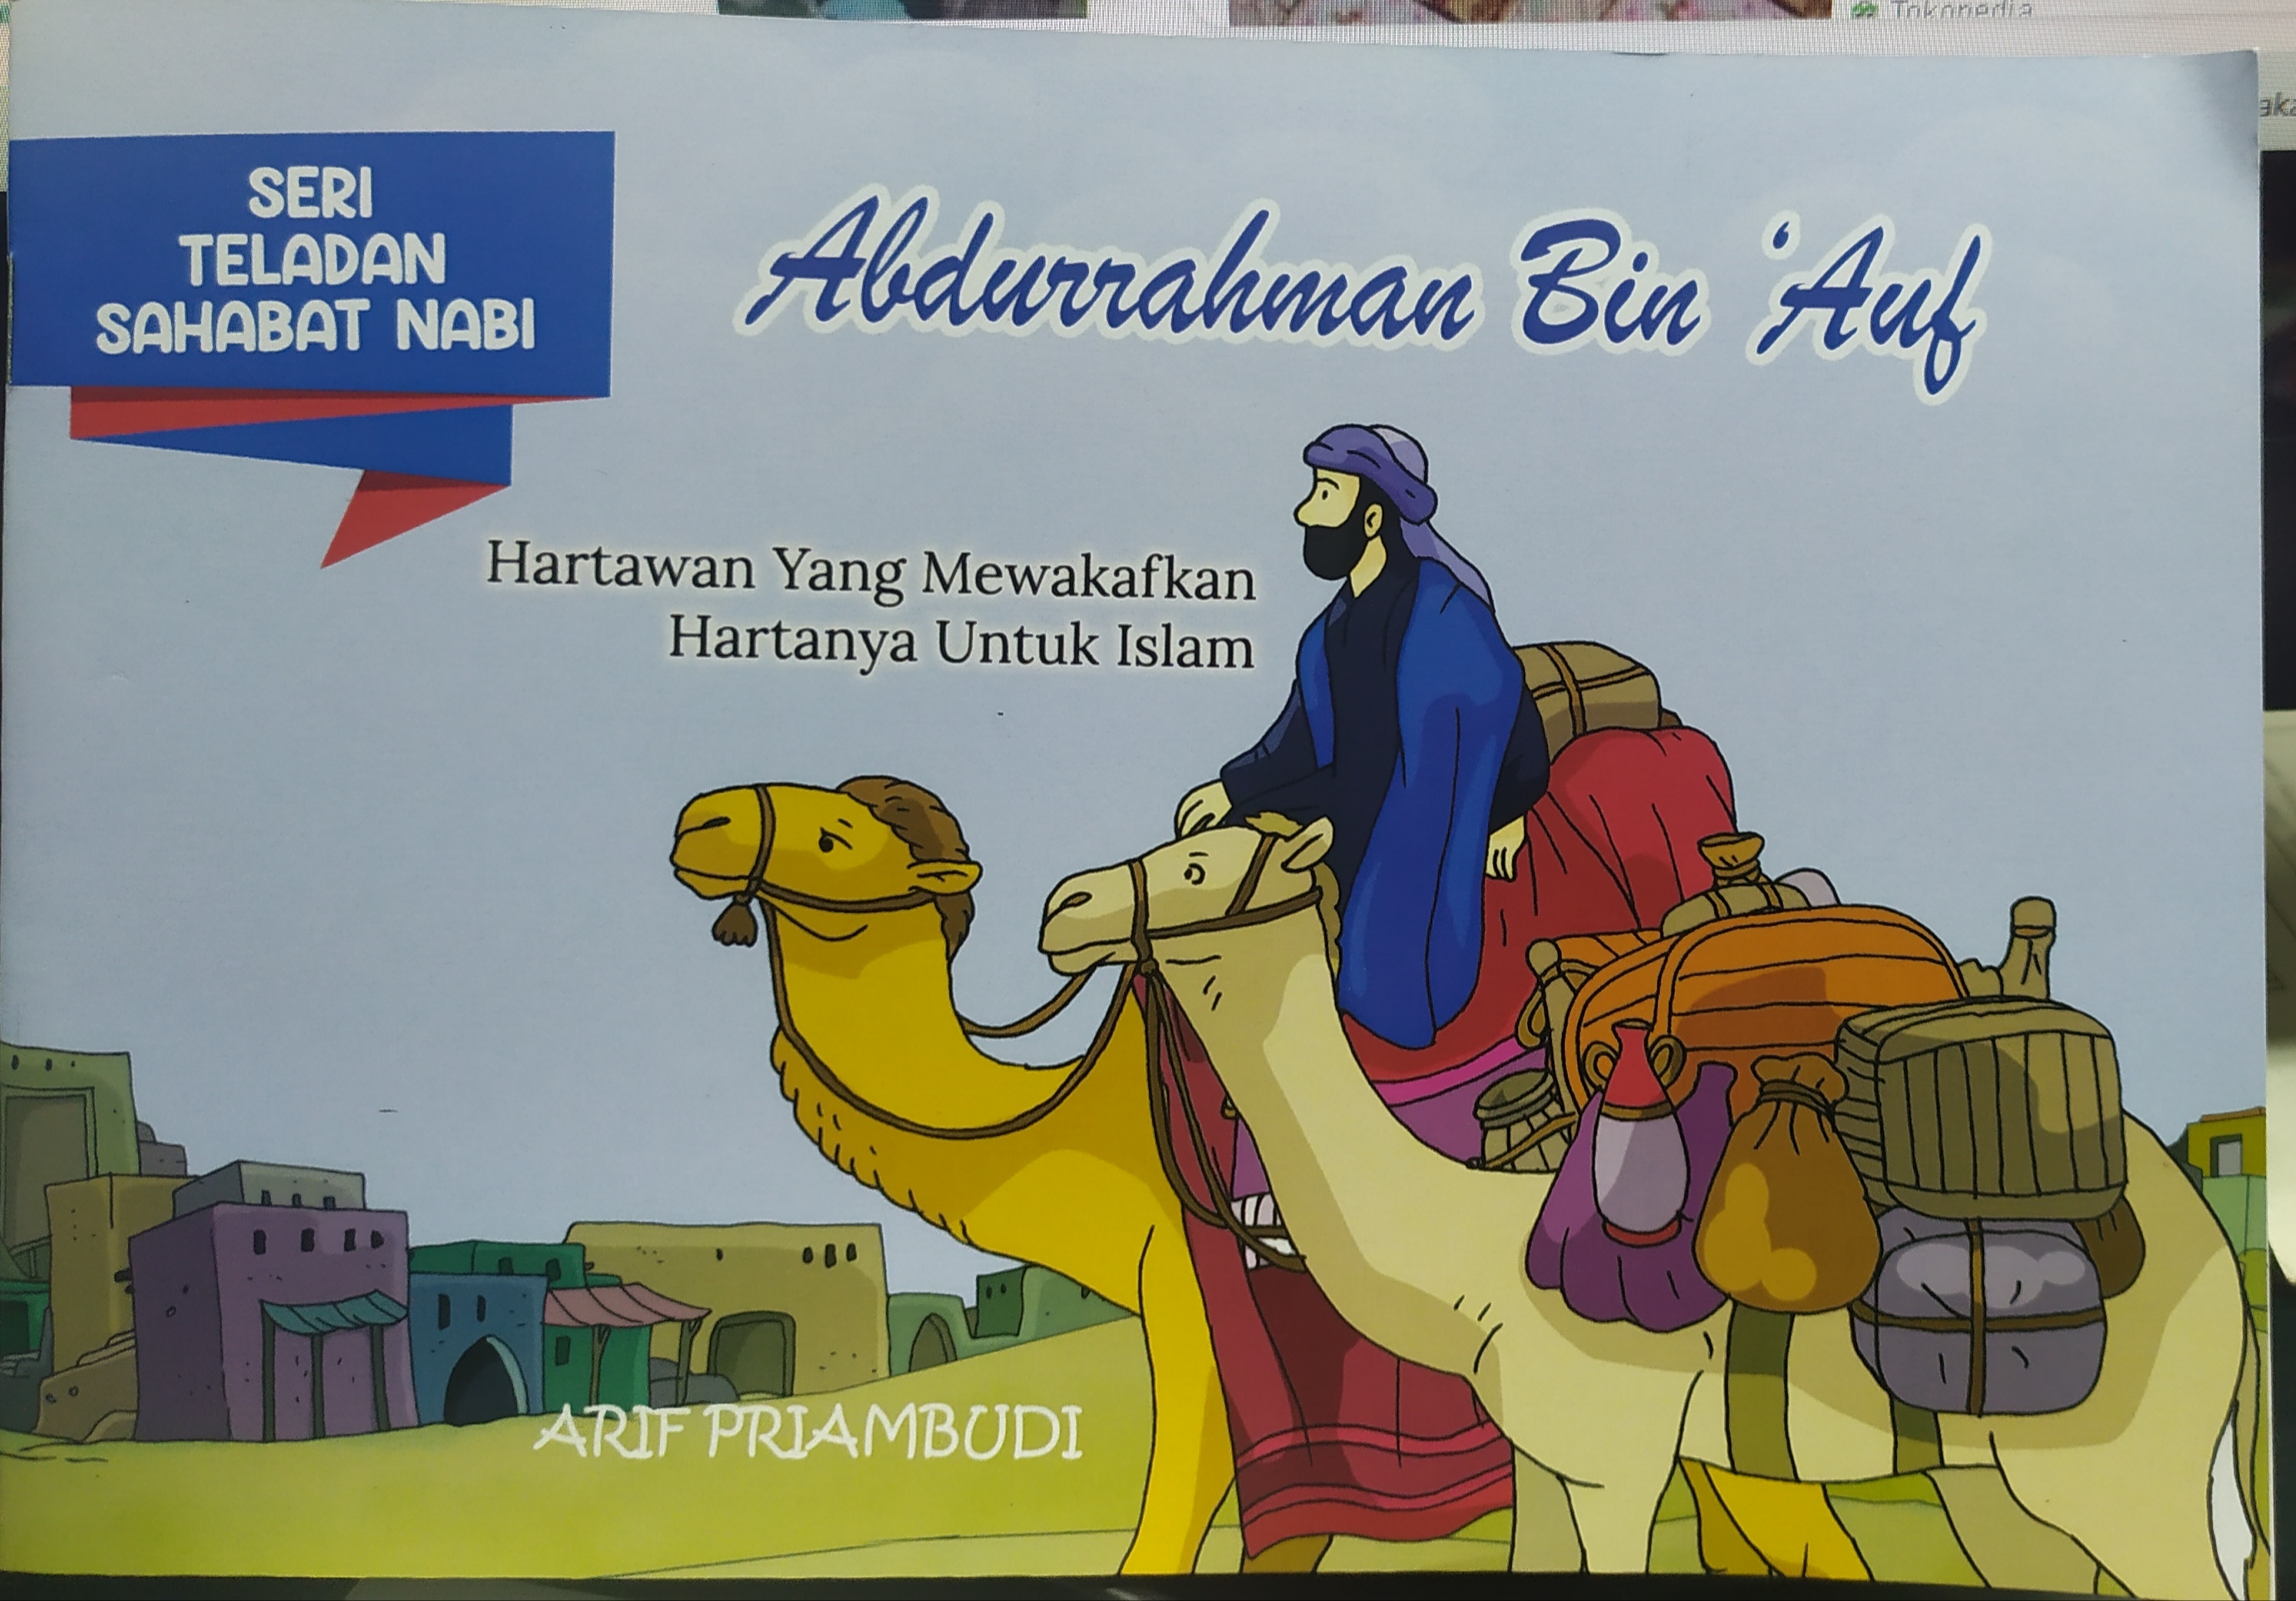 Abdurrahman bin Auf :  hartawan yang mewakafkan hartanya untuk islam